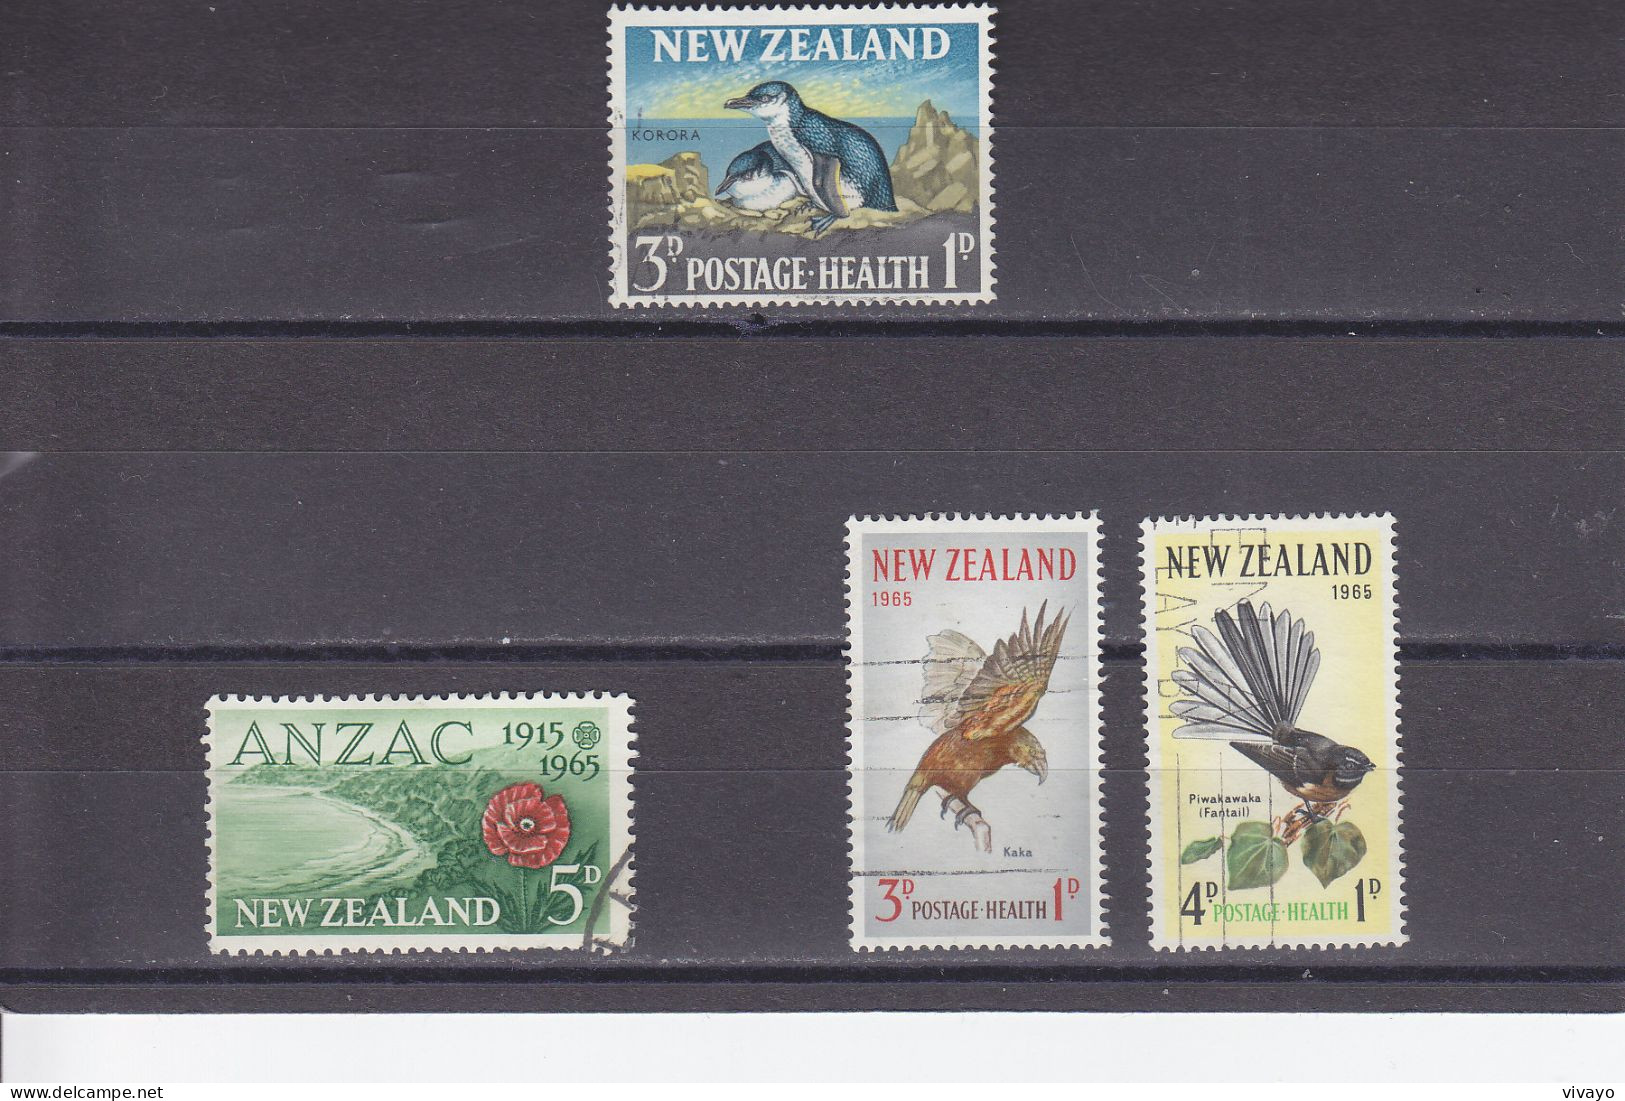 NEW ZEALAND - O / FINE CANCELLED - 1964/1965 - BIRDS, HEALTH, ANZAC - Yv. 422, 426, 430/1 - Mi. 434, 438, 442/3 - Usati